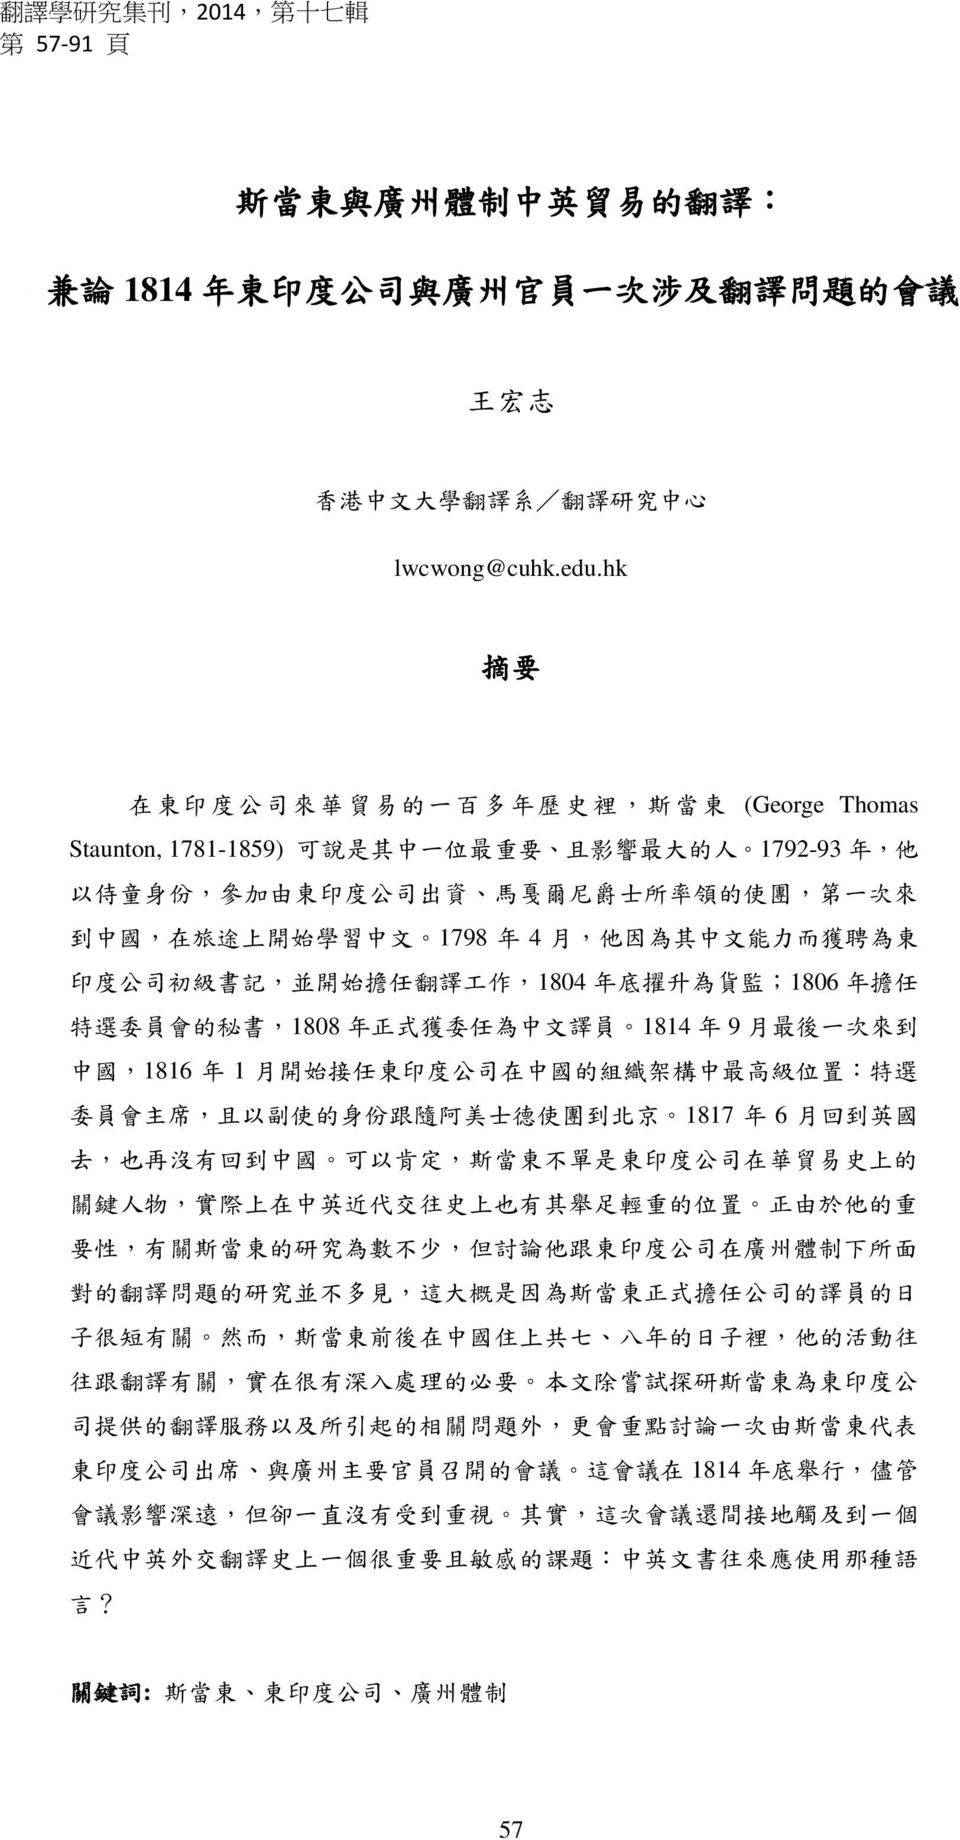 中 國, 在 旅 途 上 開 始 學 習 中 文 1798 年 4 月, 他 因 為 其 中 文 能 力 而 獲 聘 為 東 印 度 公 司 初 級 書 記, 並 開 始 擔 任 翻 譯 工 作,1804 年 底 擢 升 為 貨 監 ;1806 年 擔 任 特 選 委 員 會 的 秘 書,1808 年 正 式 獲 委 任 為 中 文 譯 員 1814 年 9 月 最 後 一 次 來 到 中